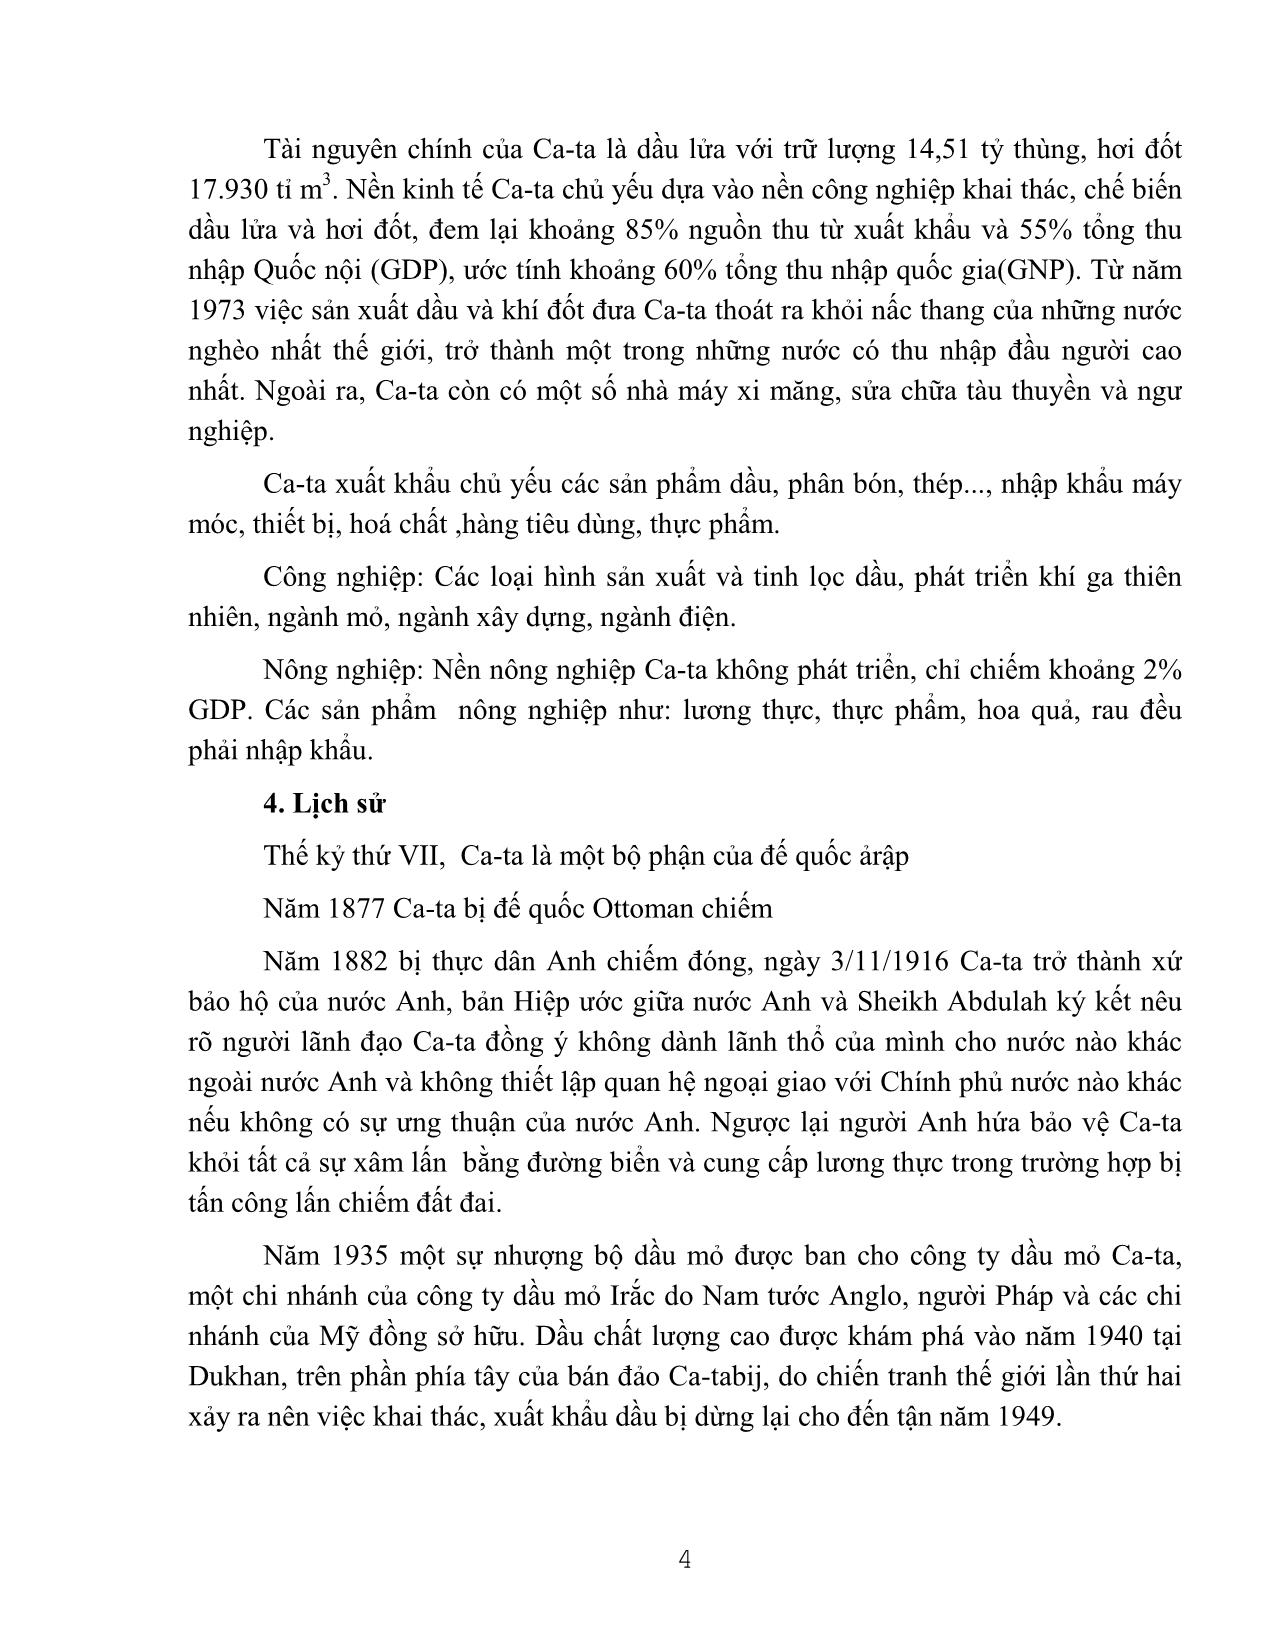 Tài liệu Những hiểu biết cần thiết dùng cho lao động Việt Nam đi làm việc tại Ca-ta trang 4